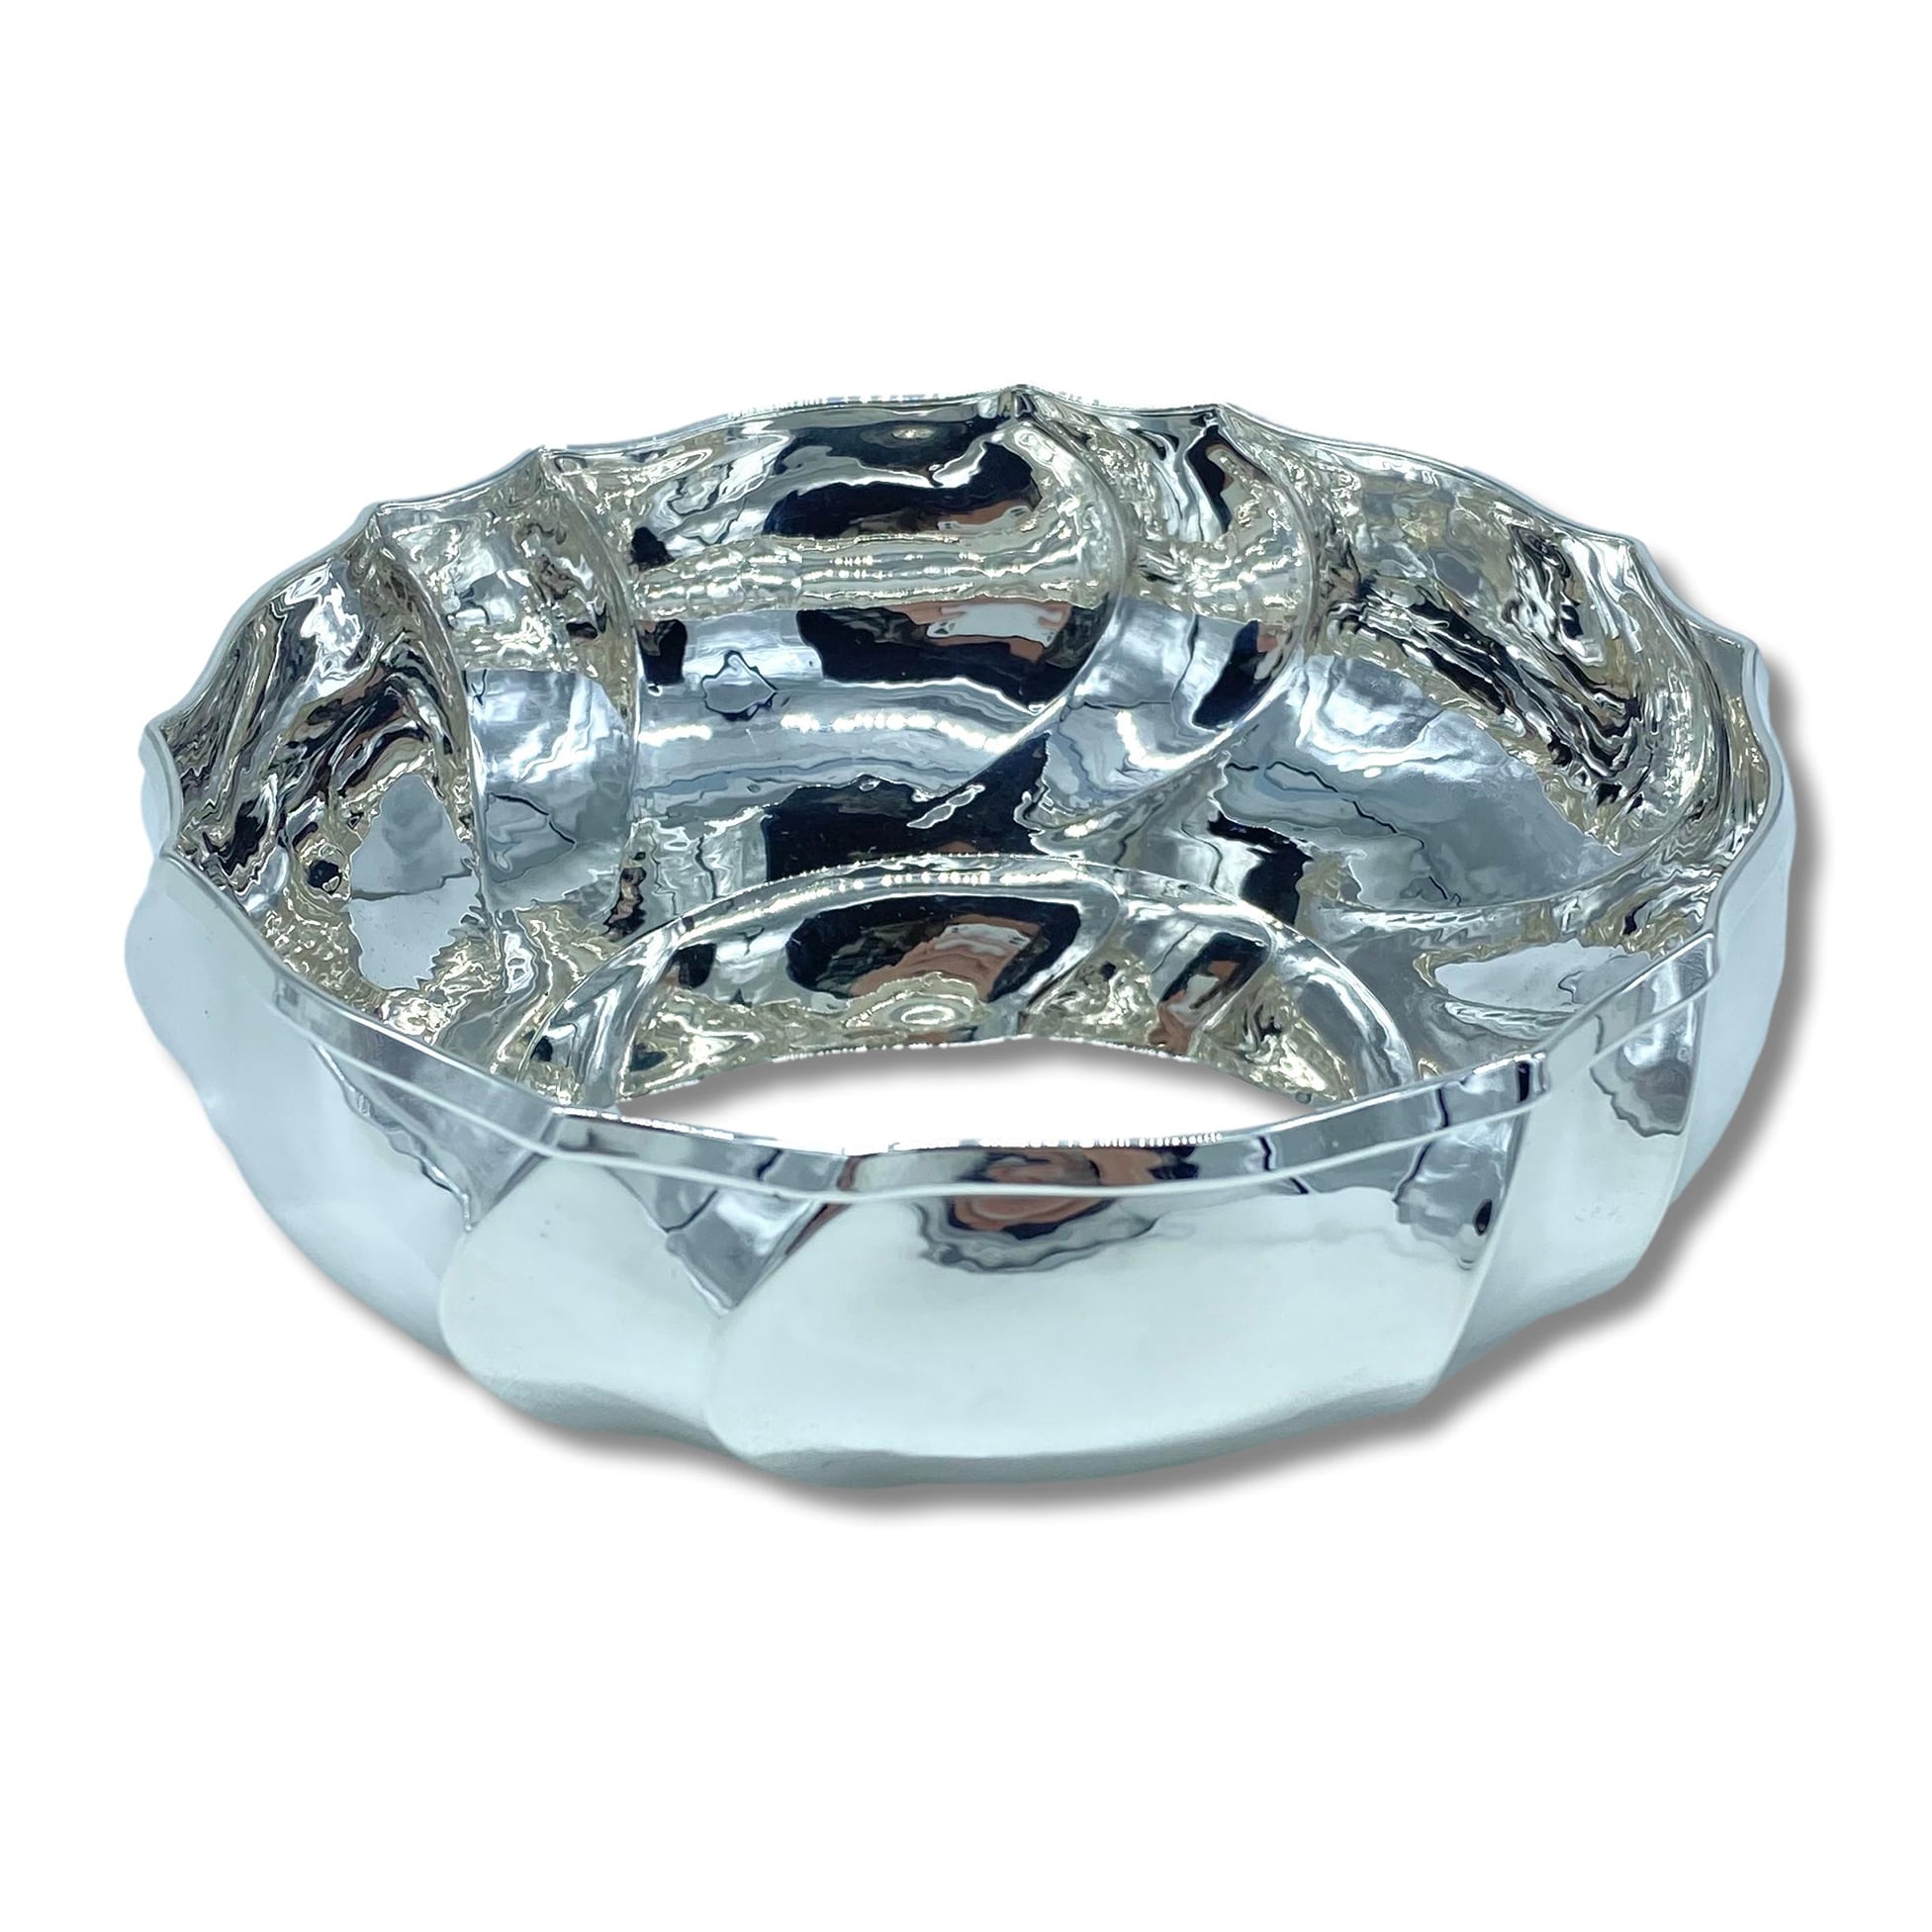 Ciotola 700 in argento diametro 17 cm - Federica & Tullio